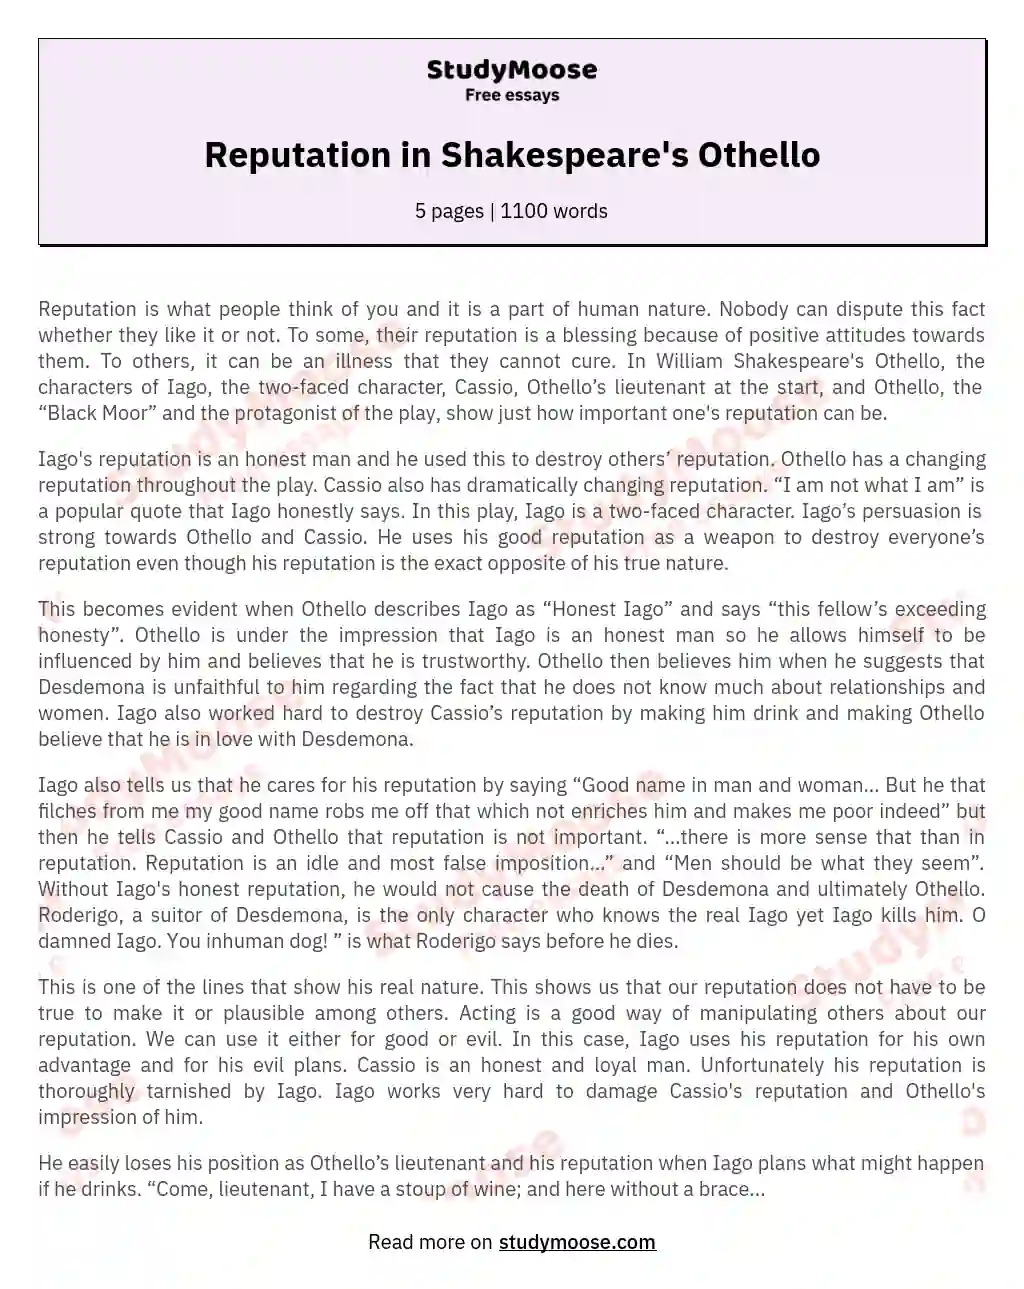 Reputation in Shakespeare's Othello essay